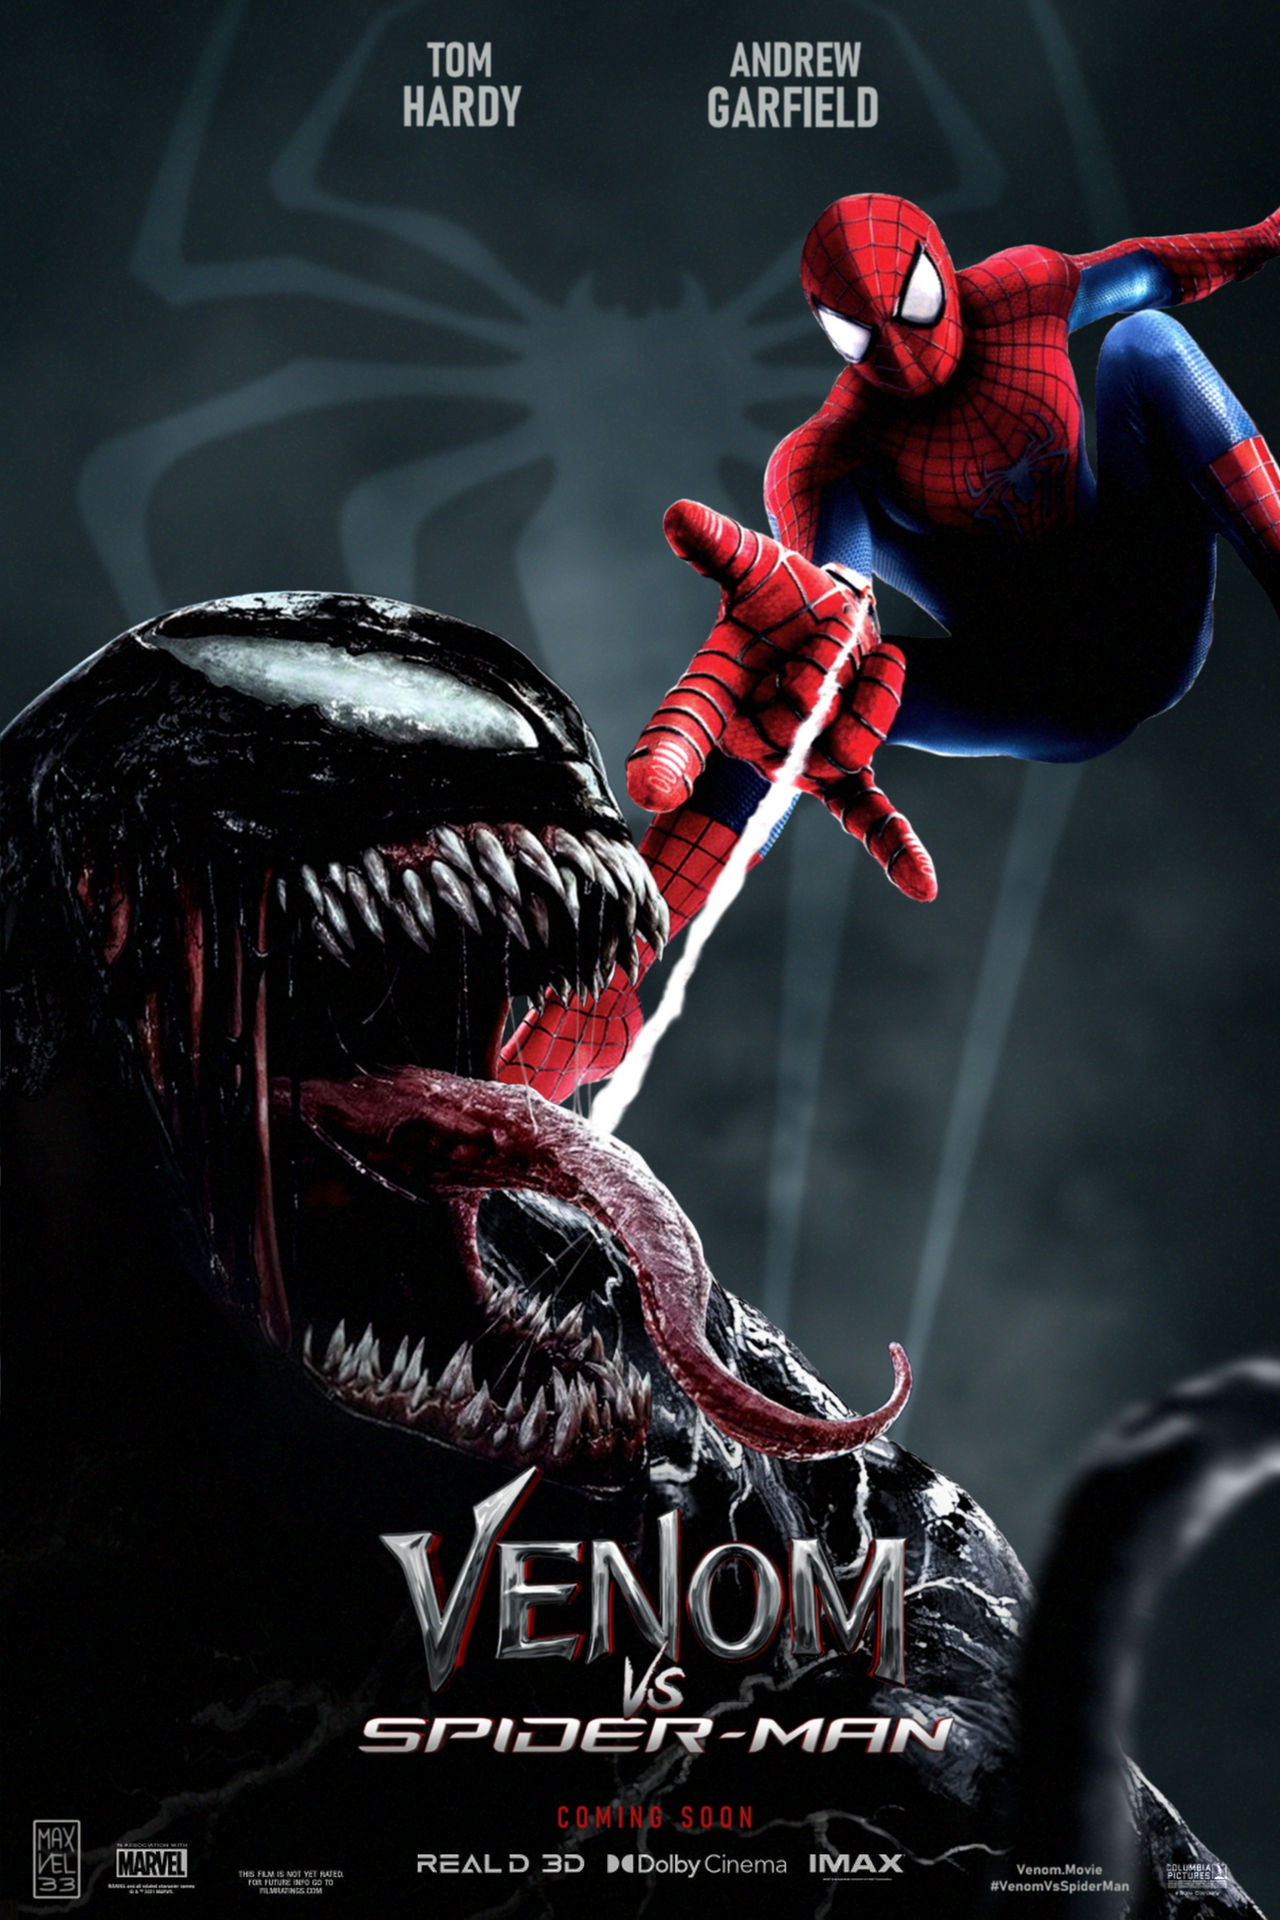 Venom vs Spider-Man Fan Poster by Maxvel33 on DeviantArt